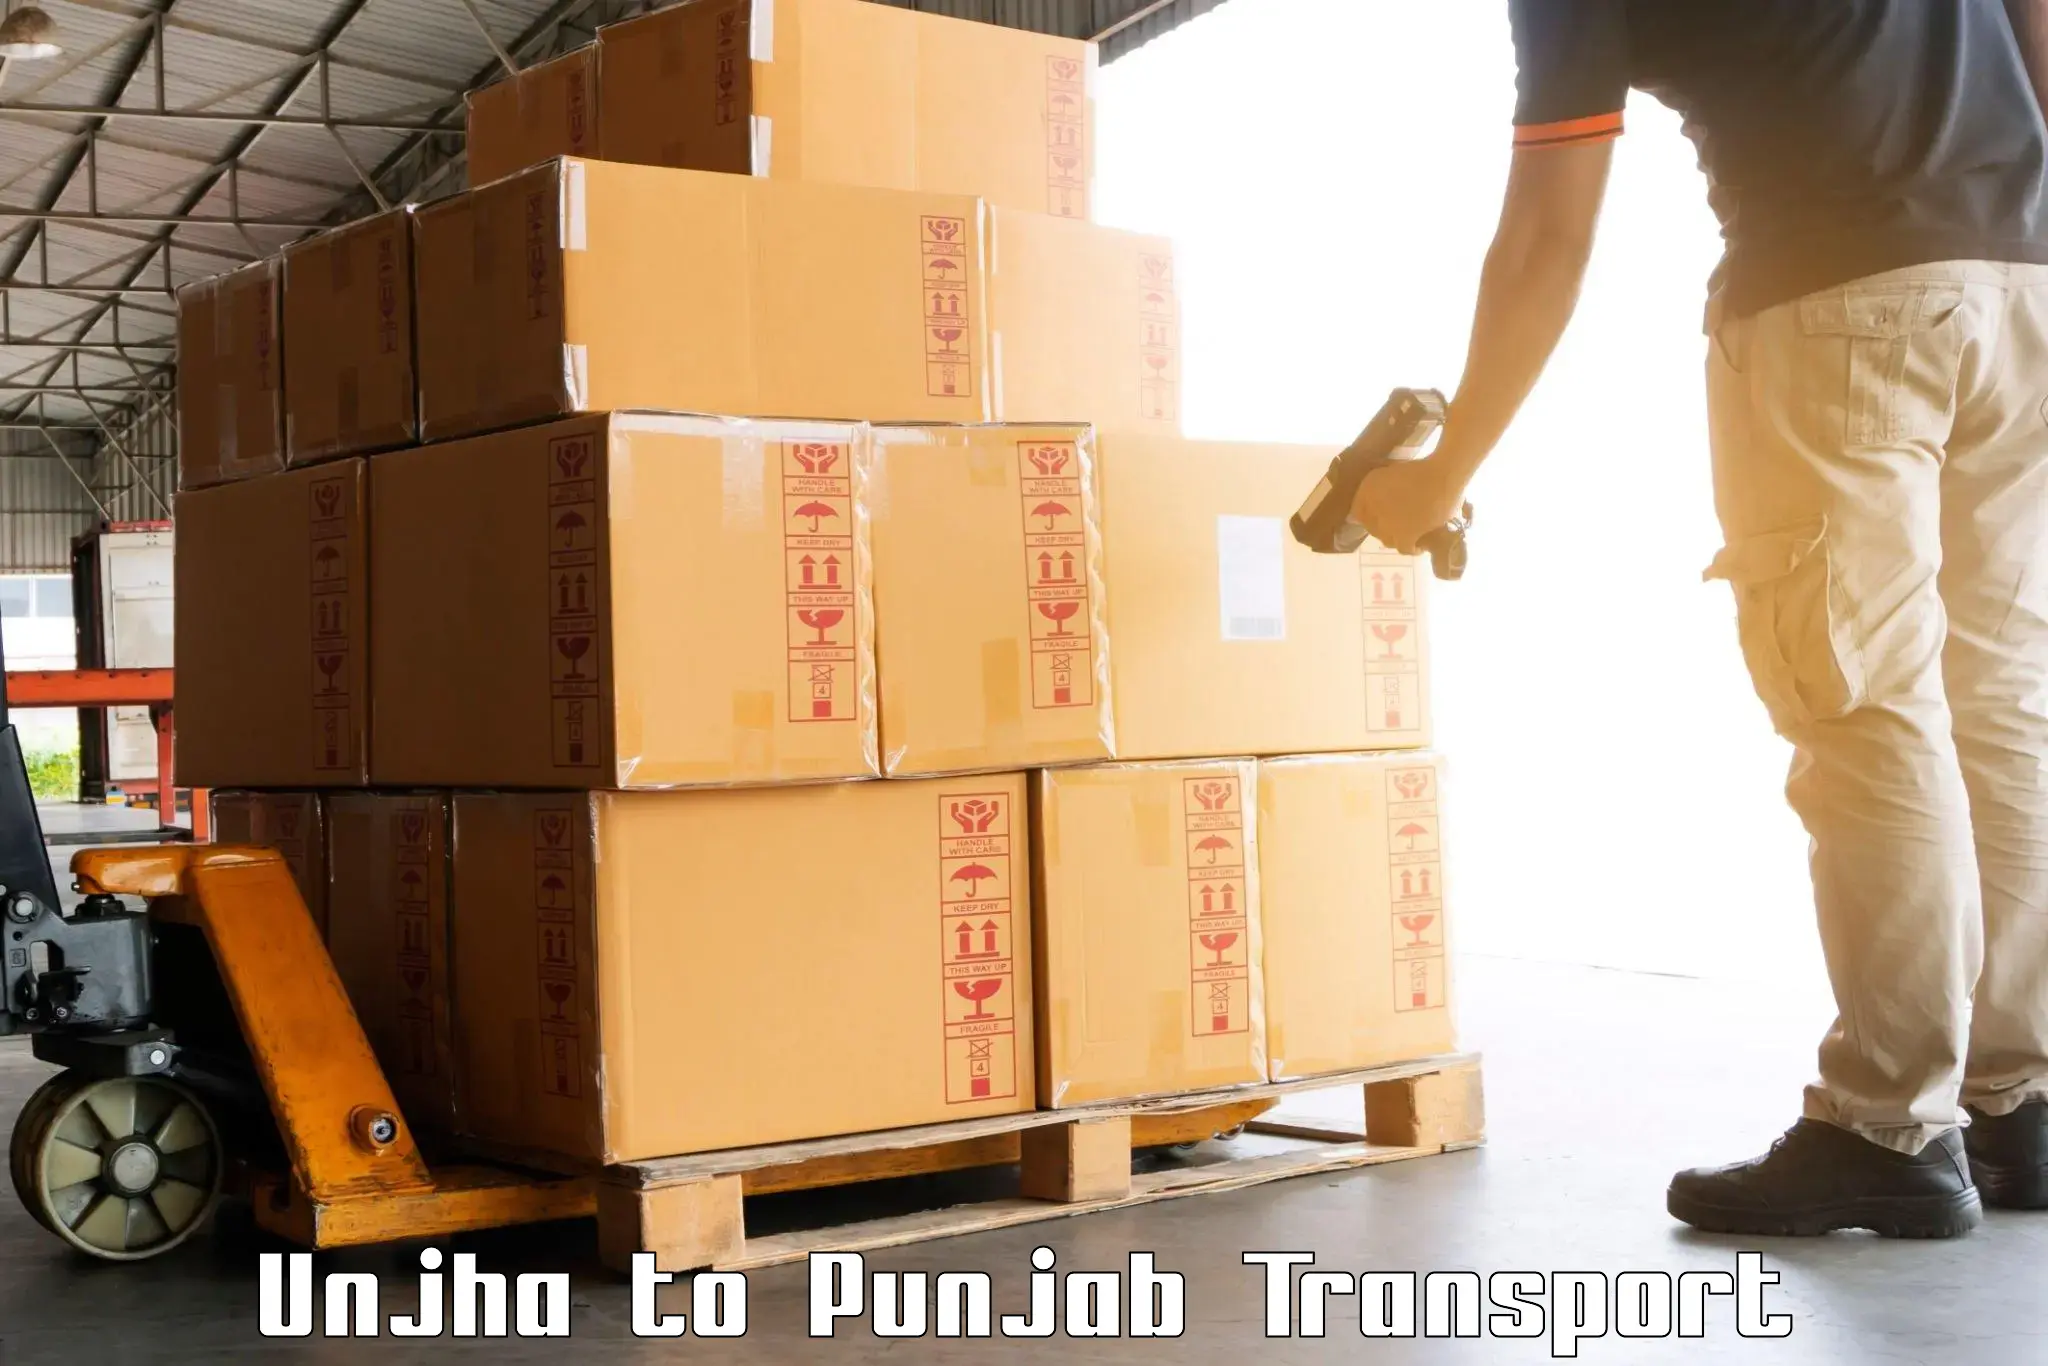 India truck logistics services Unjha to Faridkot